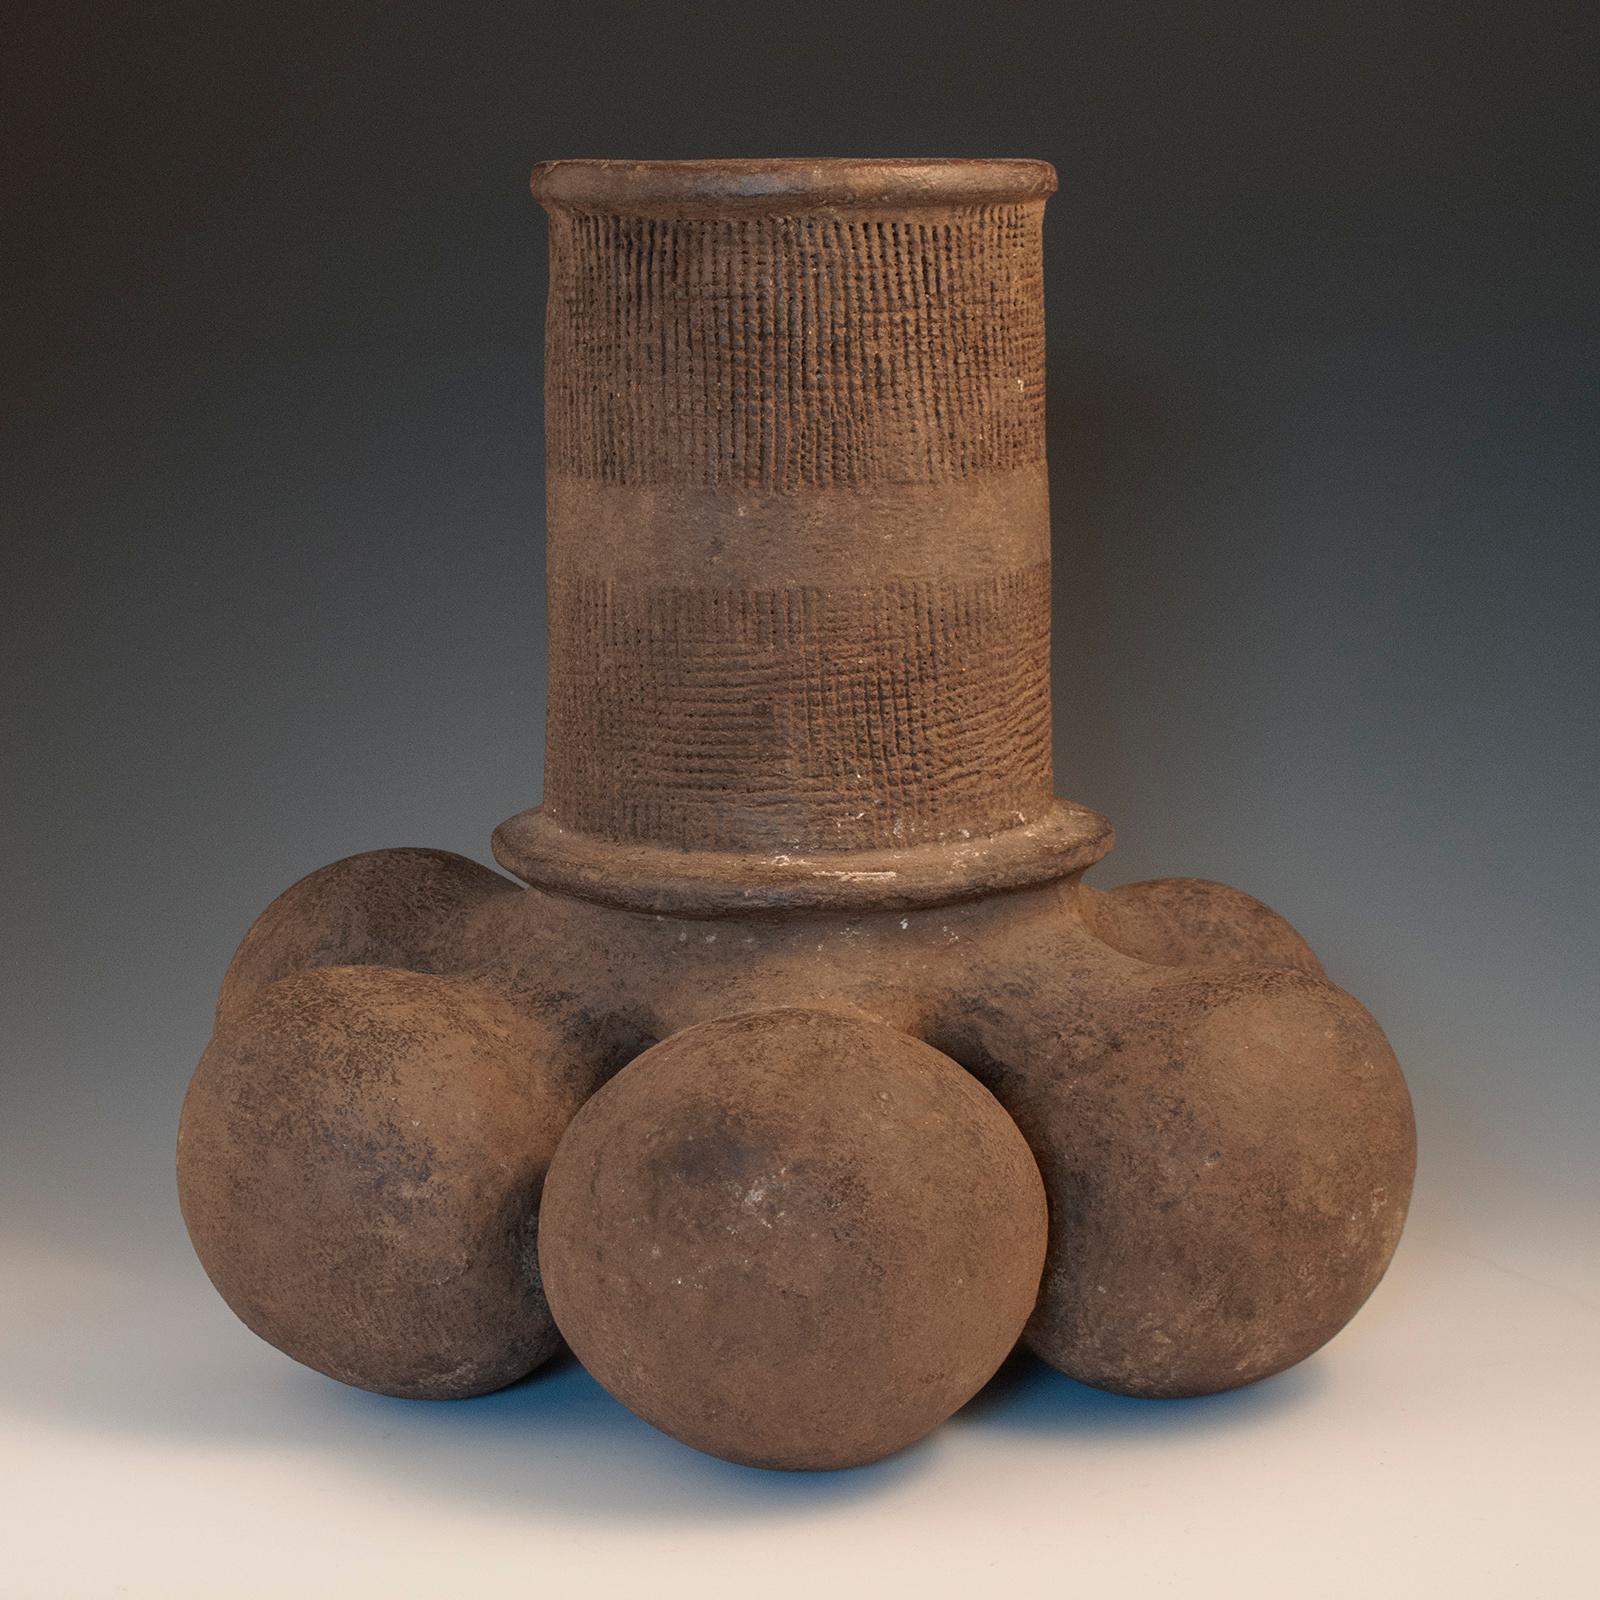 Kugelförmiges Gefäß aus der Mitte des 20. Jahrhunderts, Mangbetu-Volk, D. R. Kongo

Ein ungewöhnlich großes und auffälliges nicht-figuratives Gefäß des Mangbetu-Volkes, das aus sechs Lappen besteht, die mit einem zentralen vertikalen Zylinder